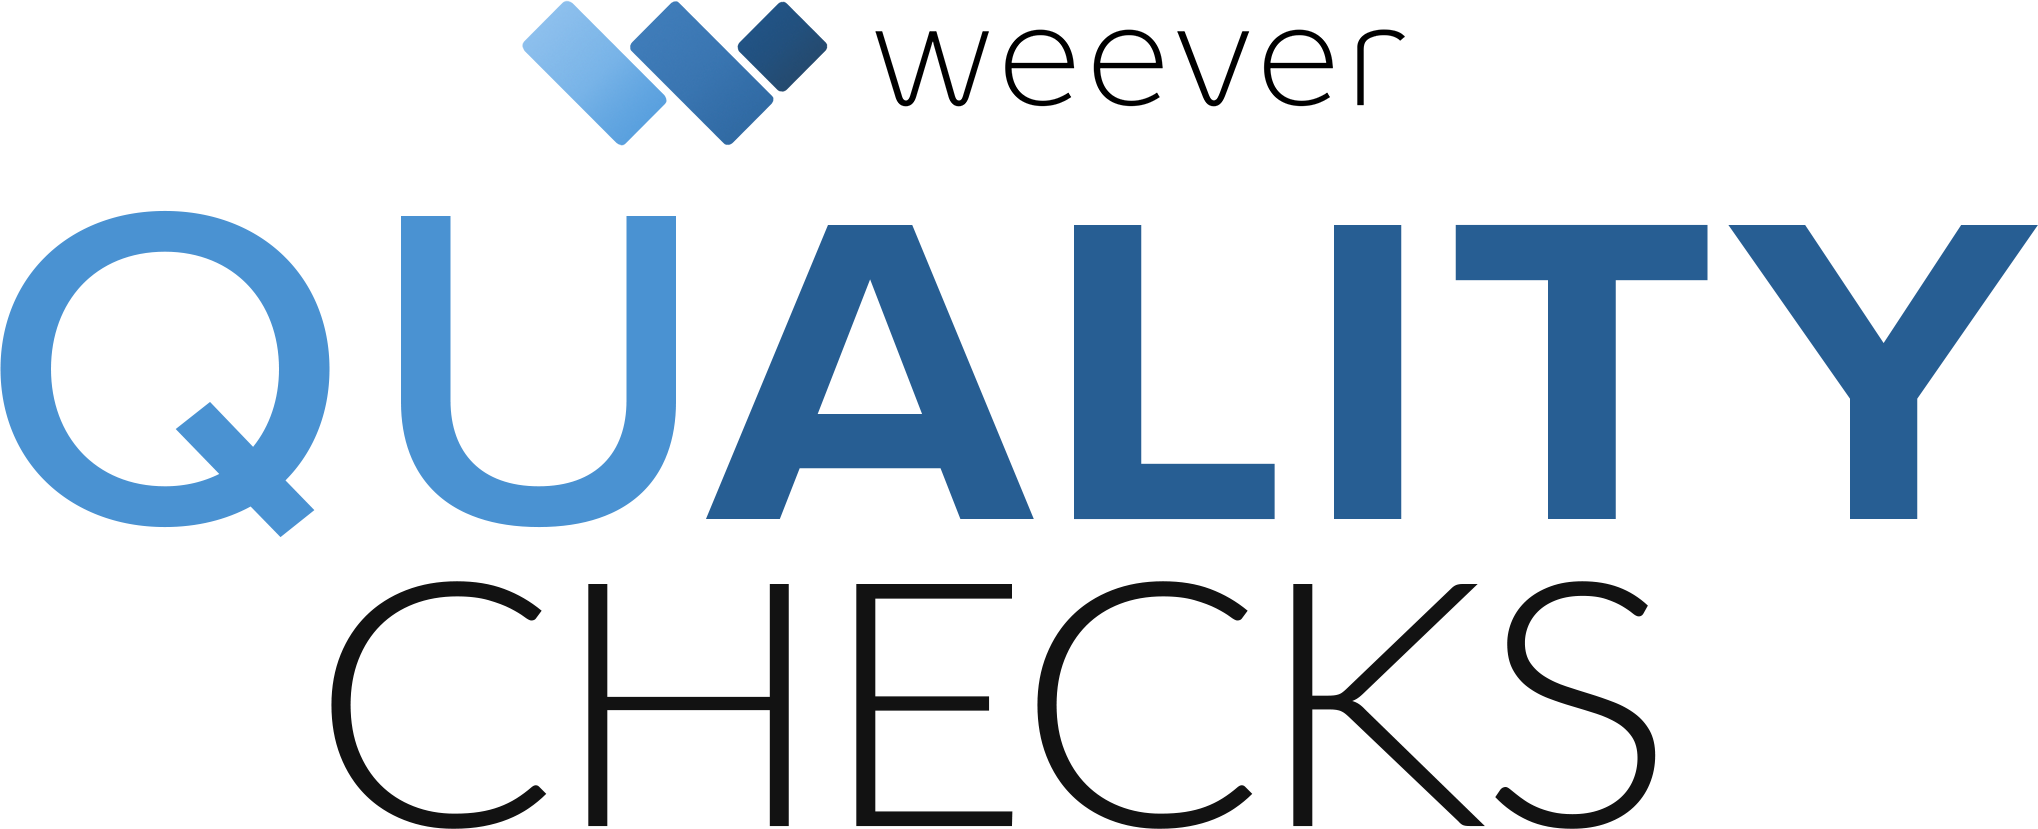 Weever Quality Checks logo